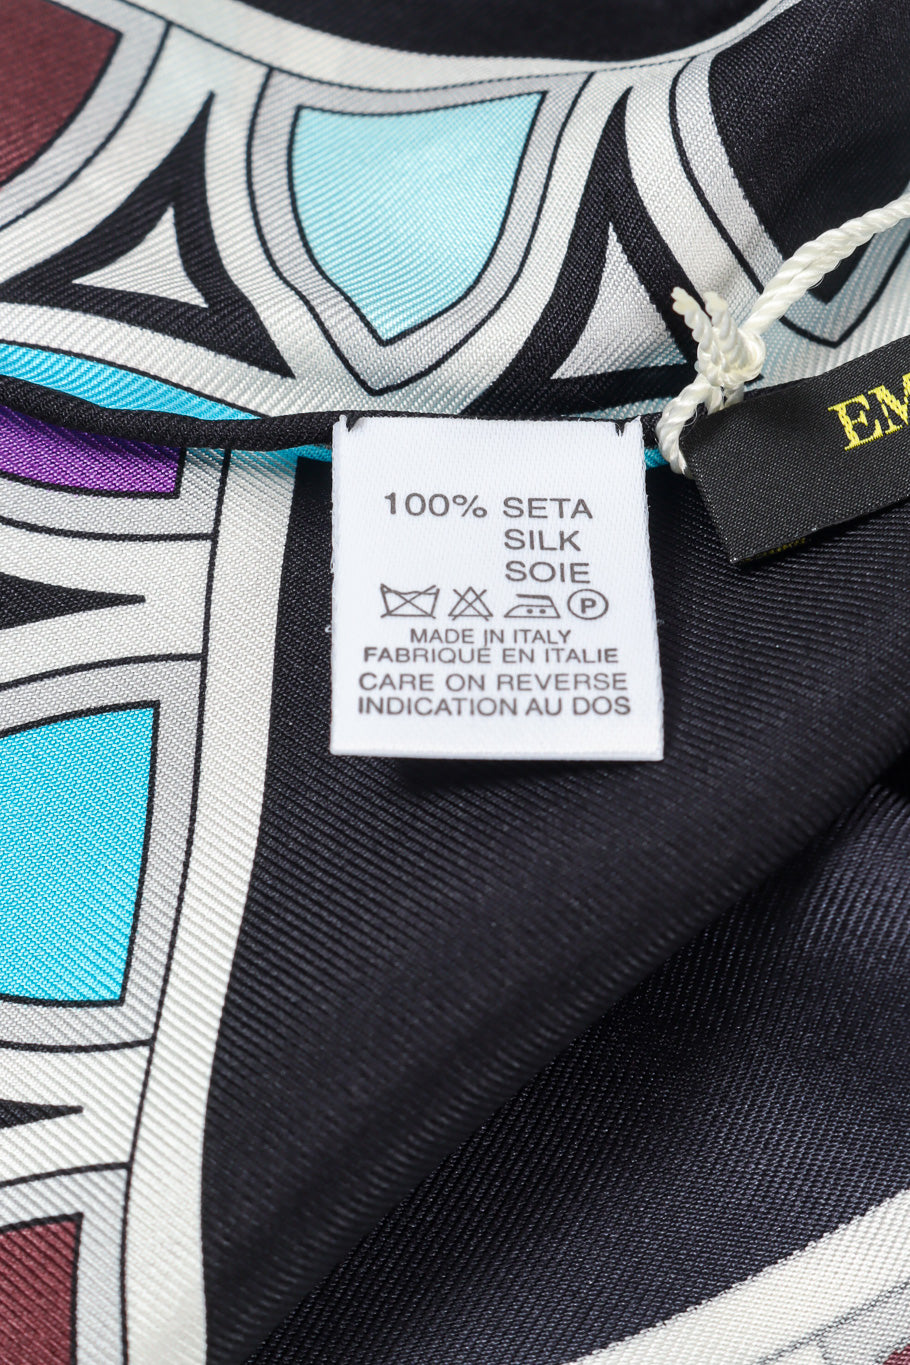 Geometric print scarf by Emilio Pucci fabric tag @recessla